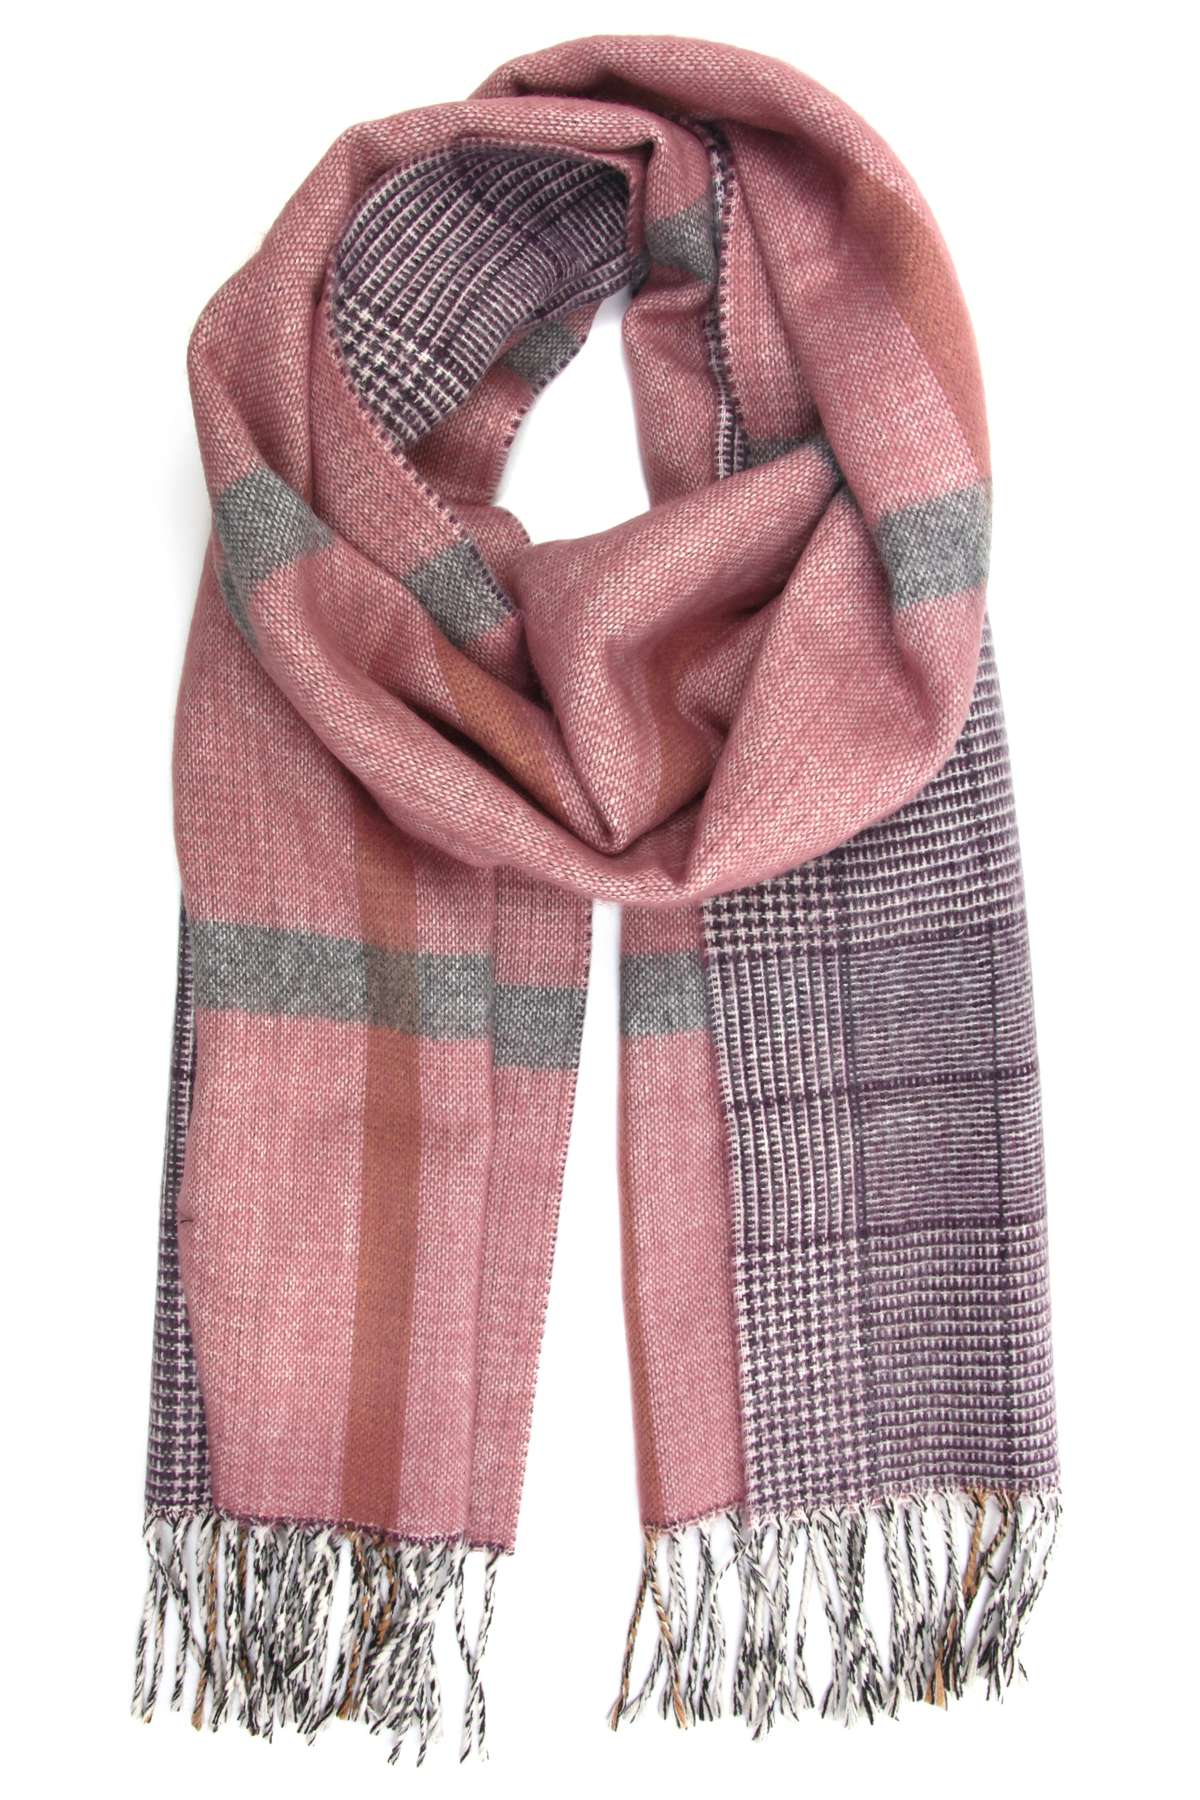 Шерстяной шарф формата XL, производство Италия.